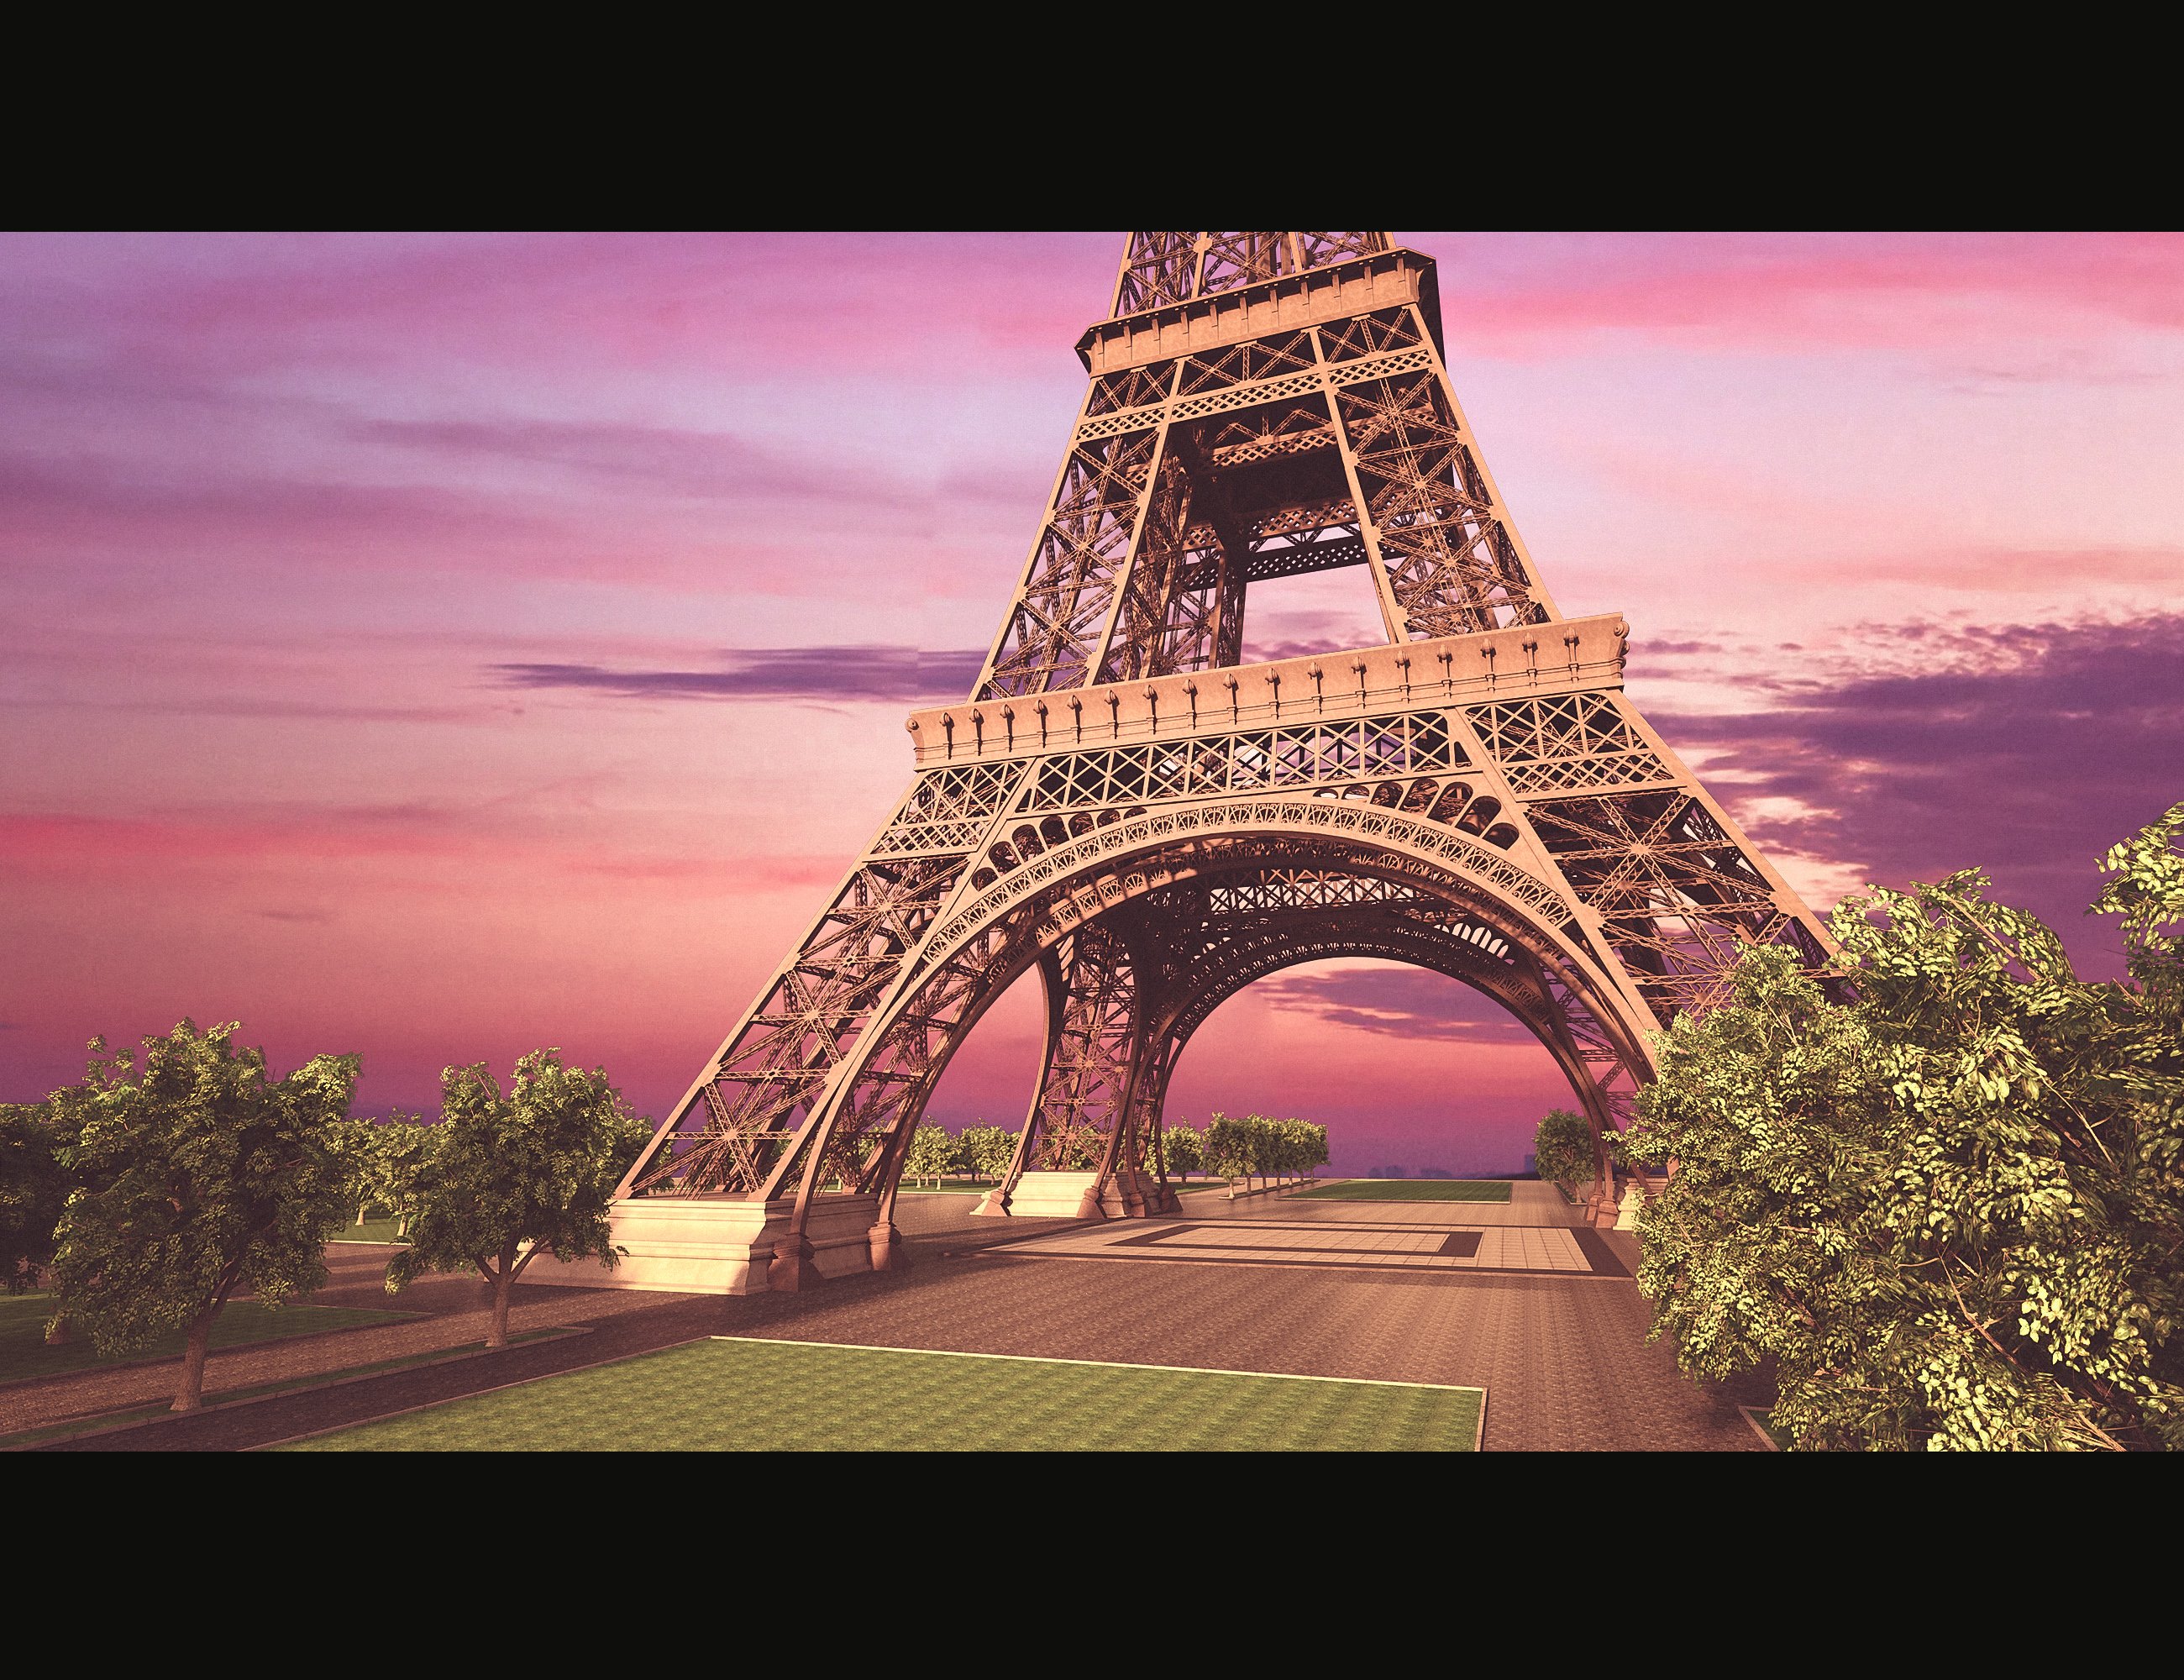 Paris City Center by: Polish, 3D Models by Daz 3D